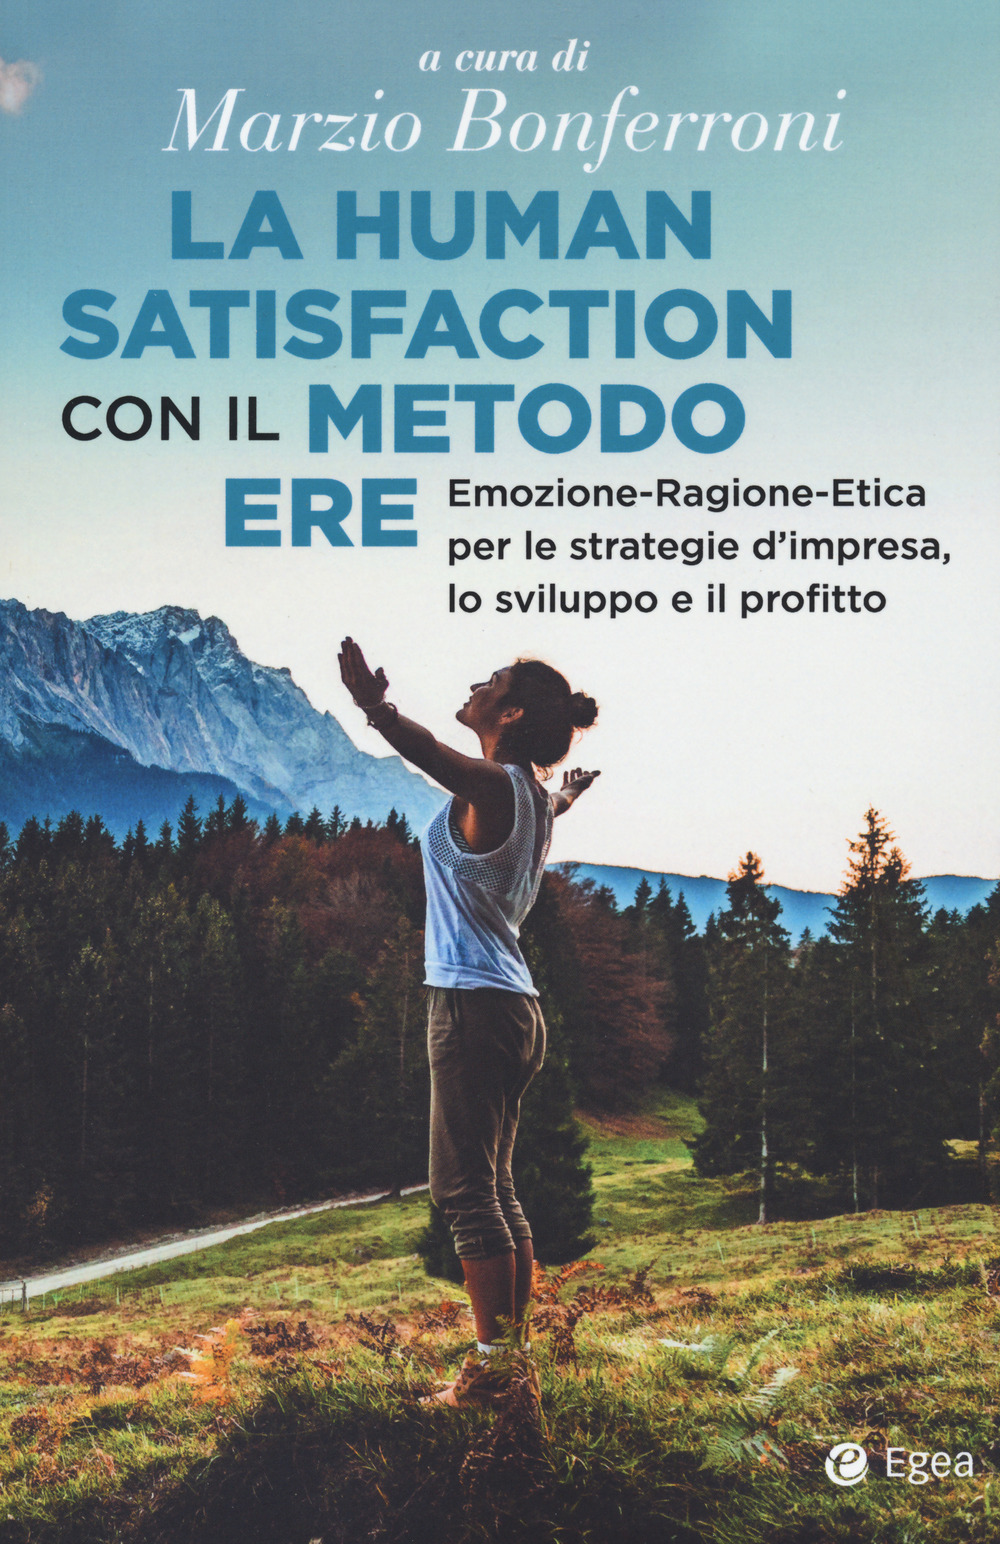 La human satisfaction con il metodo ERE. Emozione-Ragione-Etica per le strategie d'impresa, lo sviluppo e il profitto